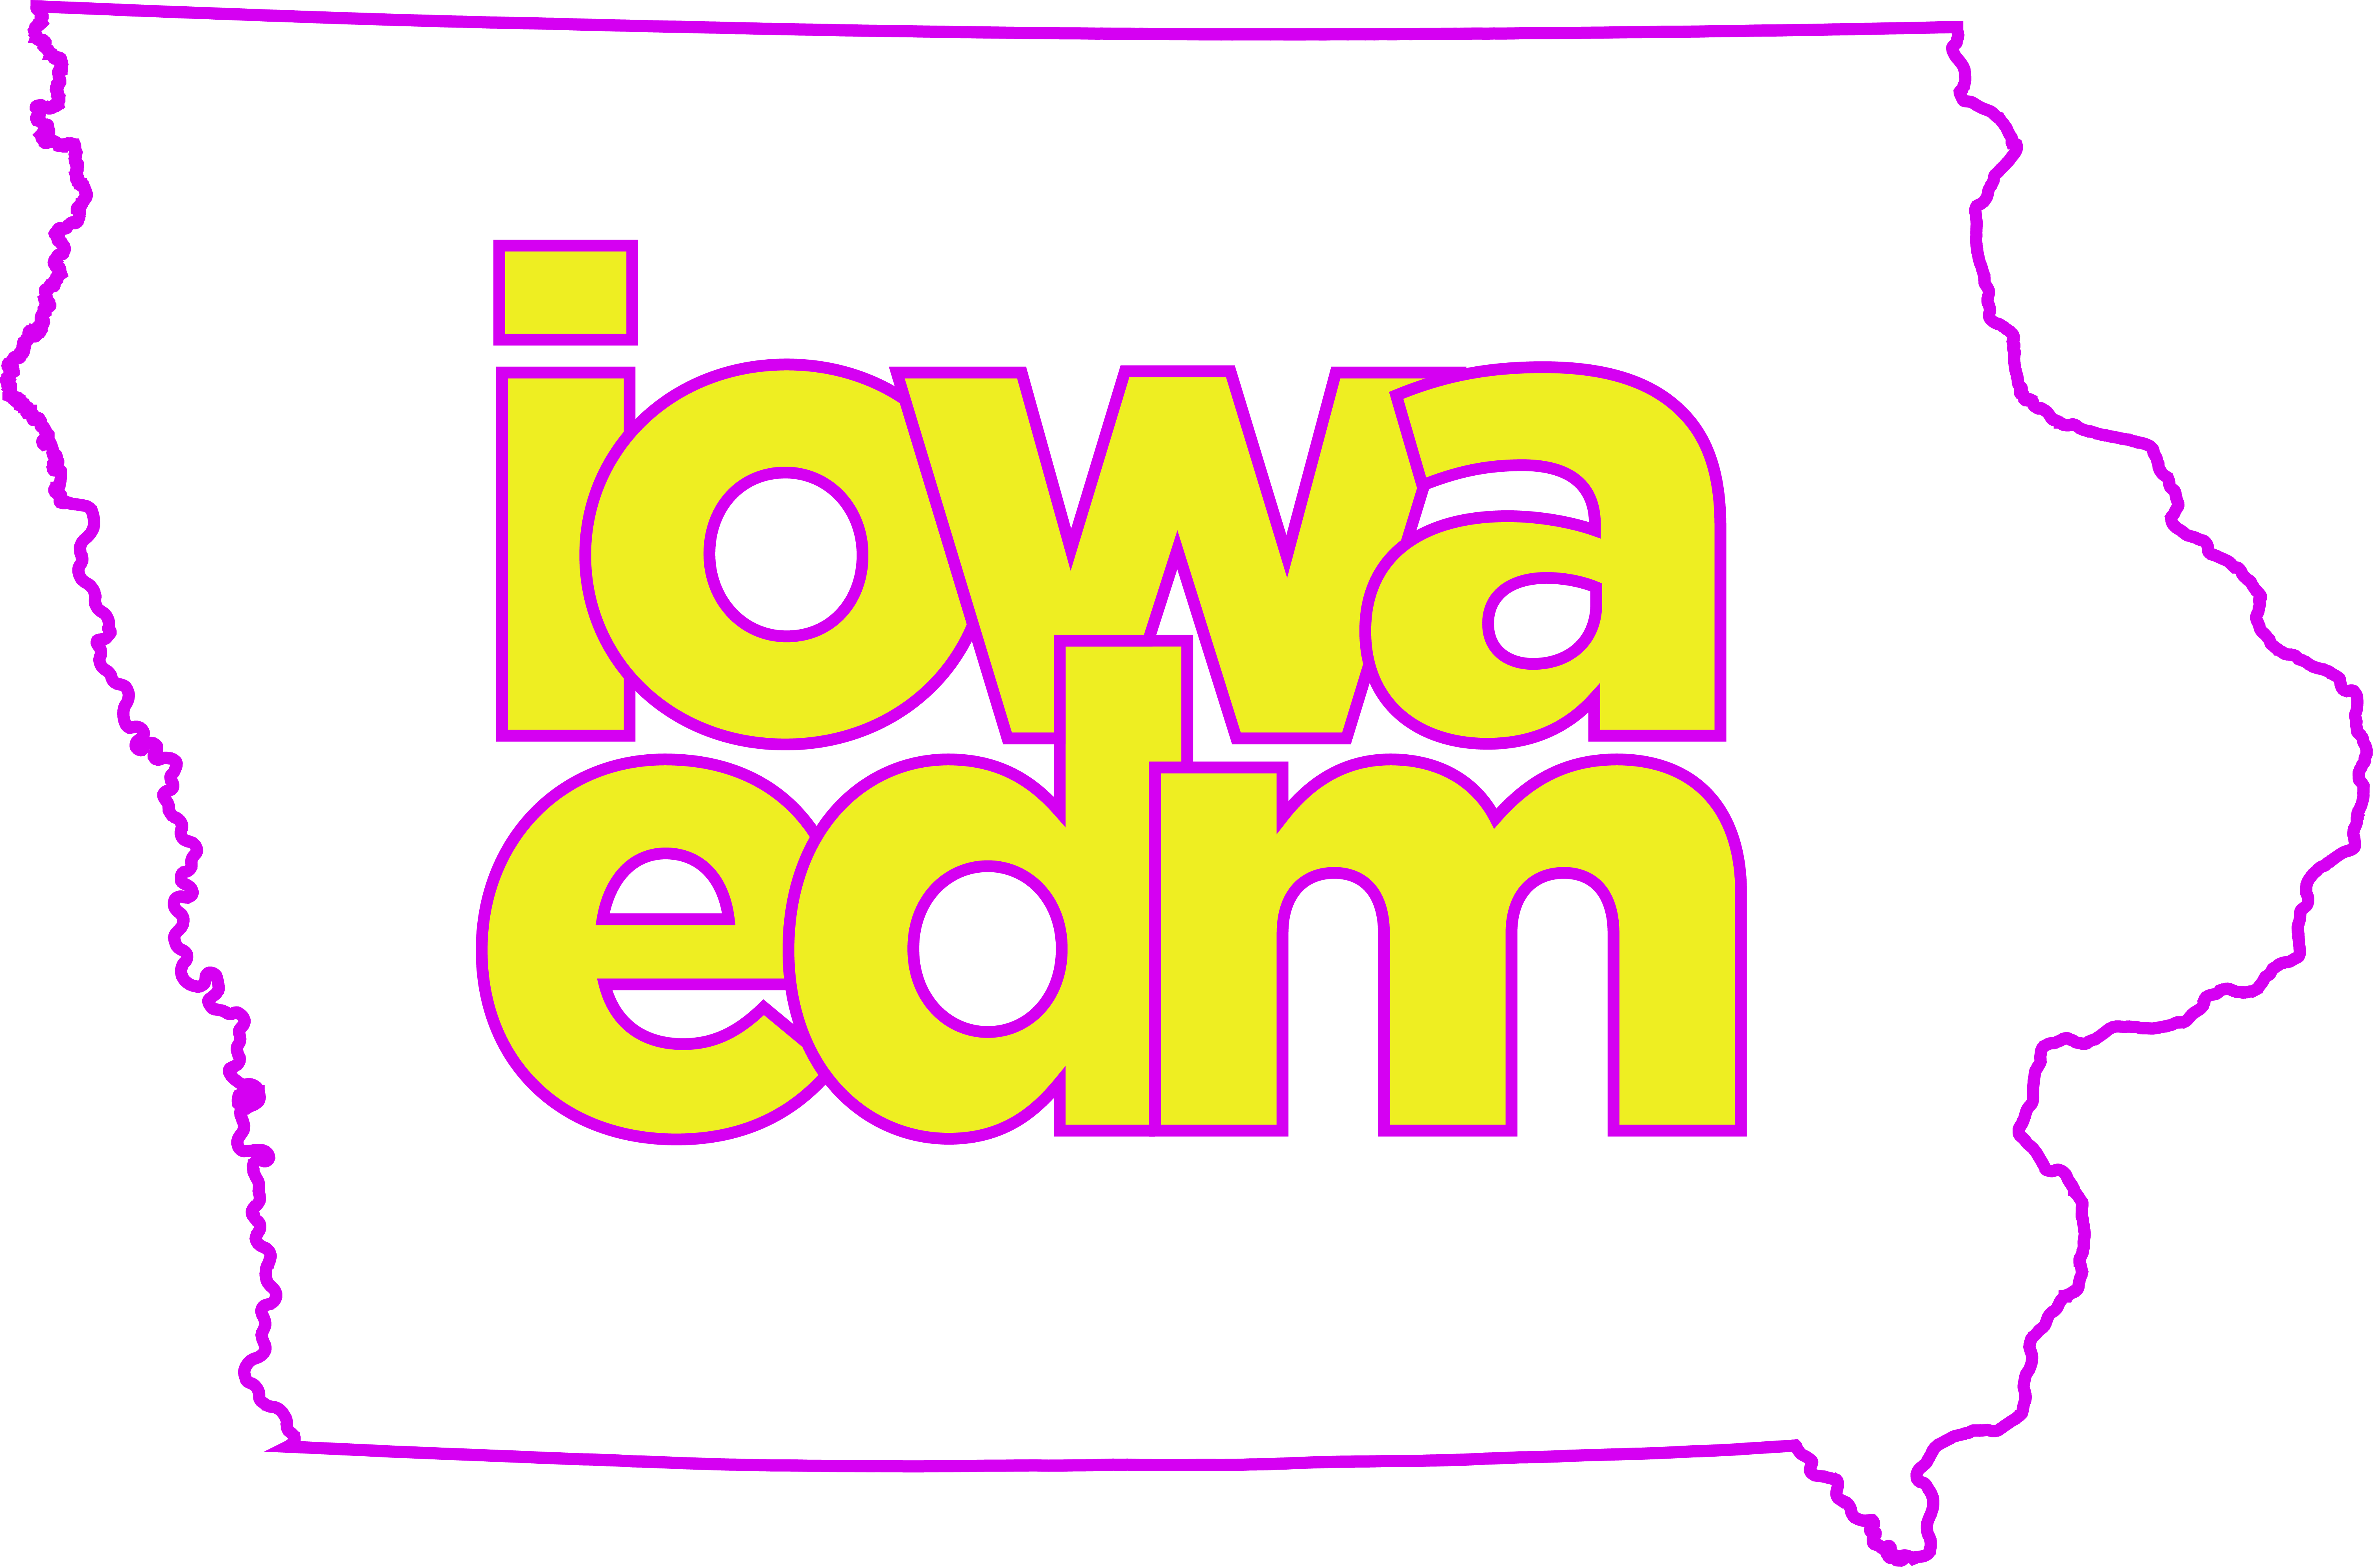 Iowa EDM